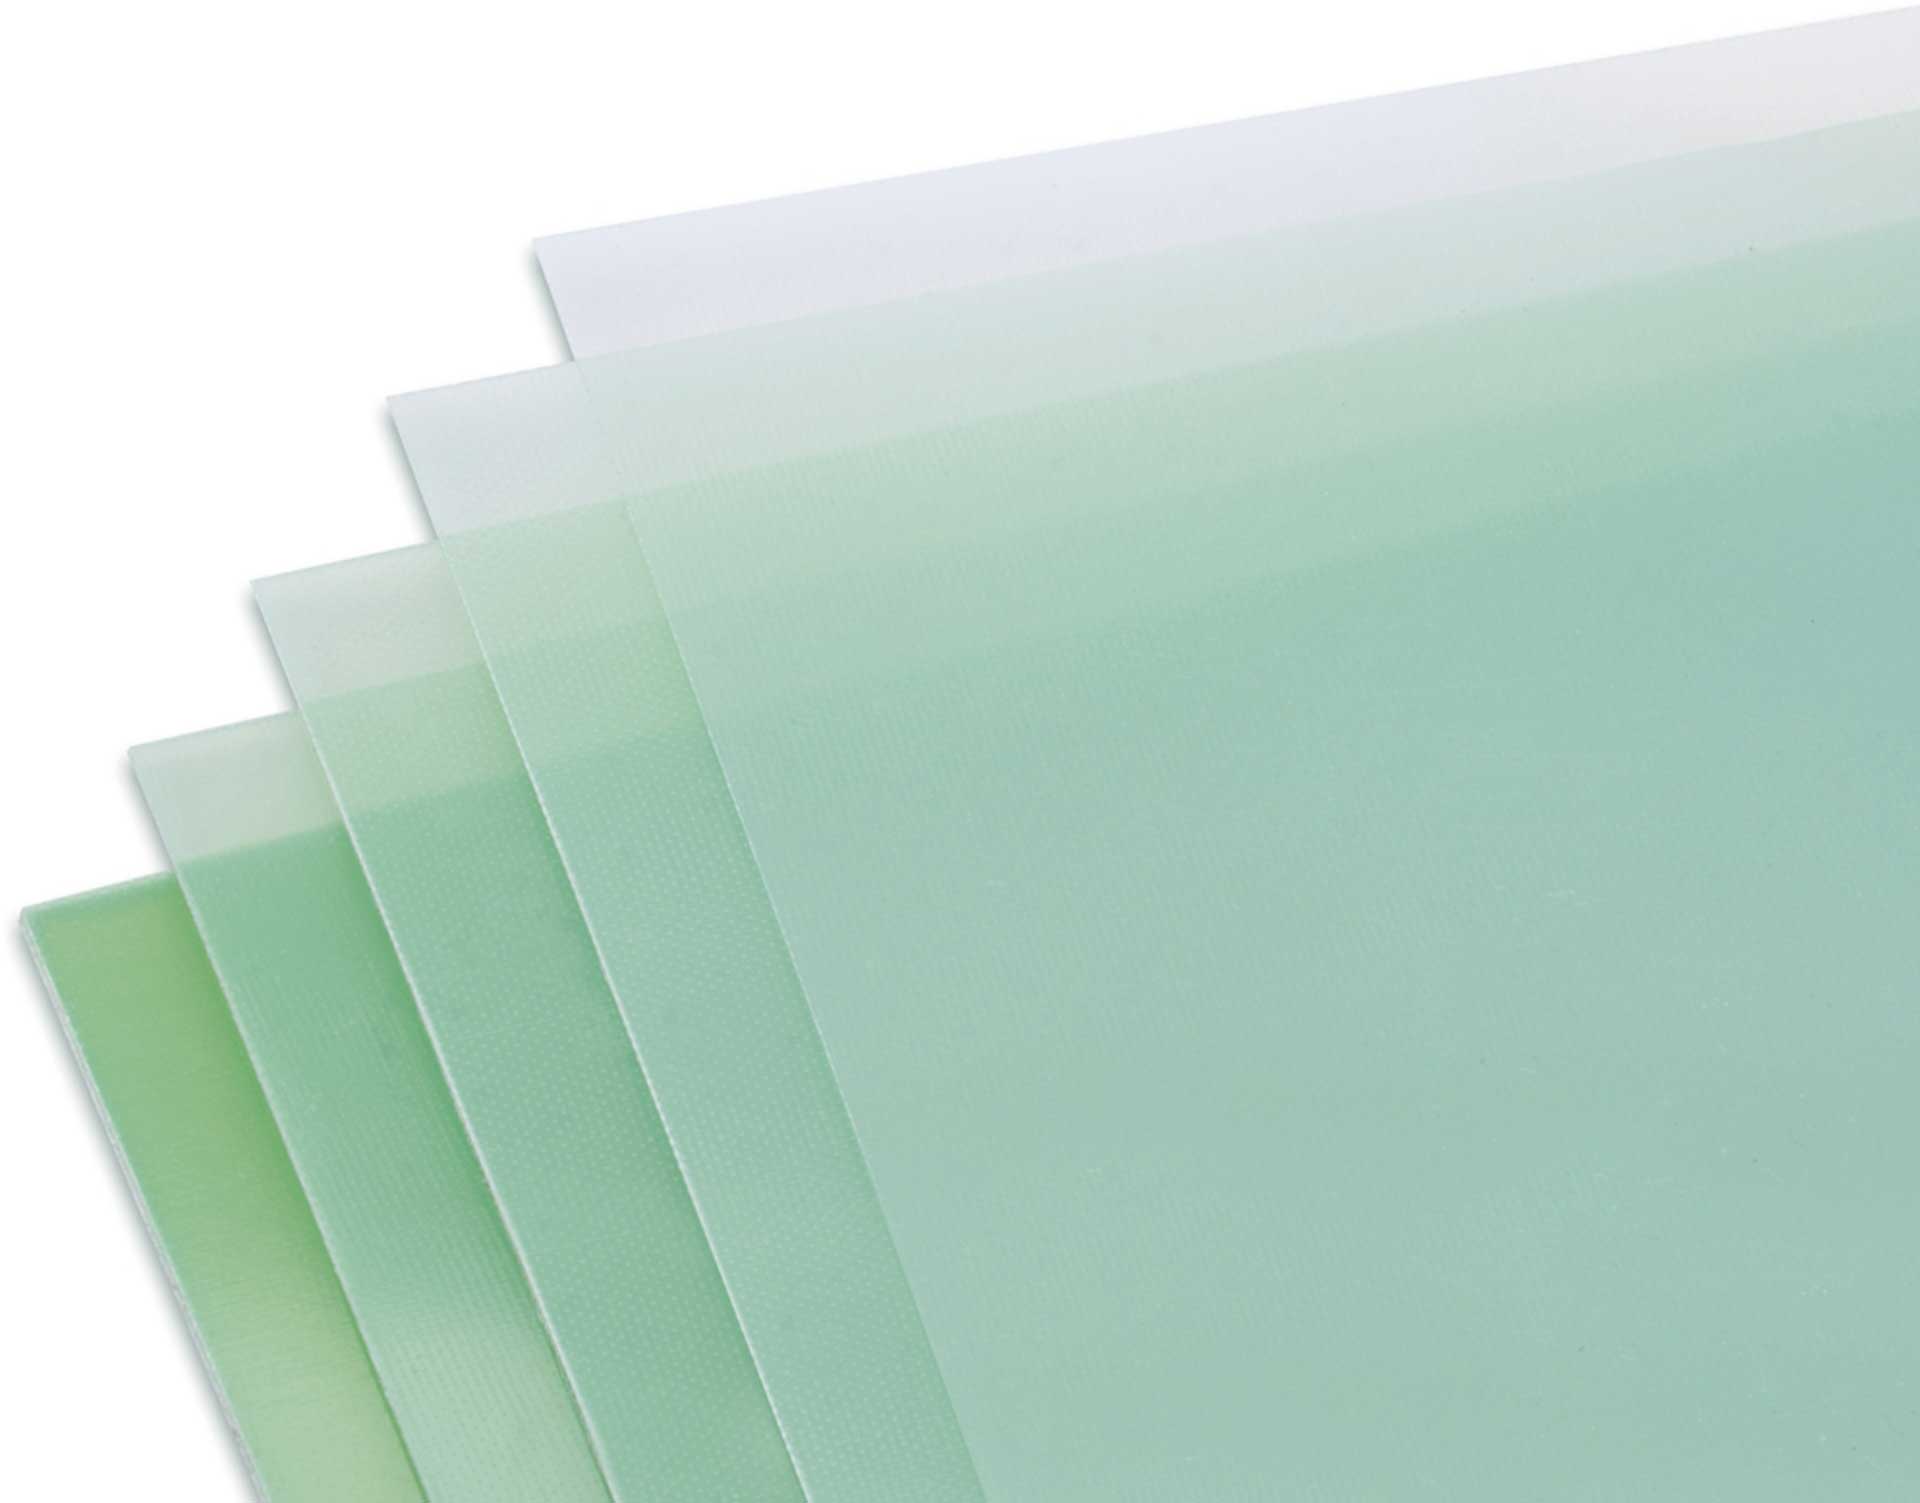 Modellbau Lindinger GFK-Platte 0,5x610x340mm matt, grünlich transparent